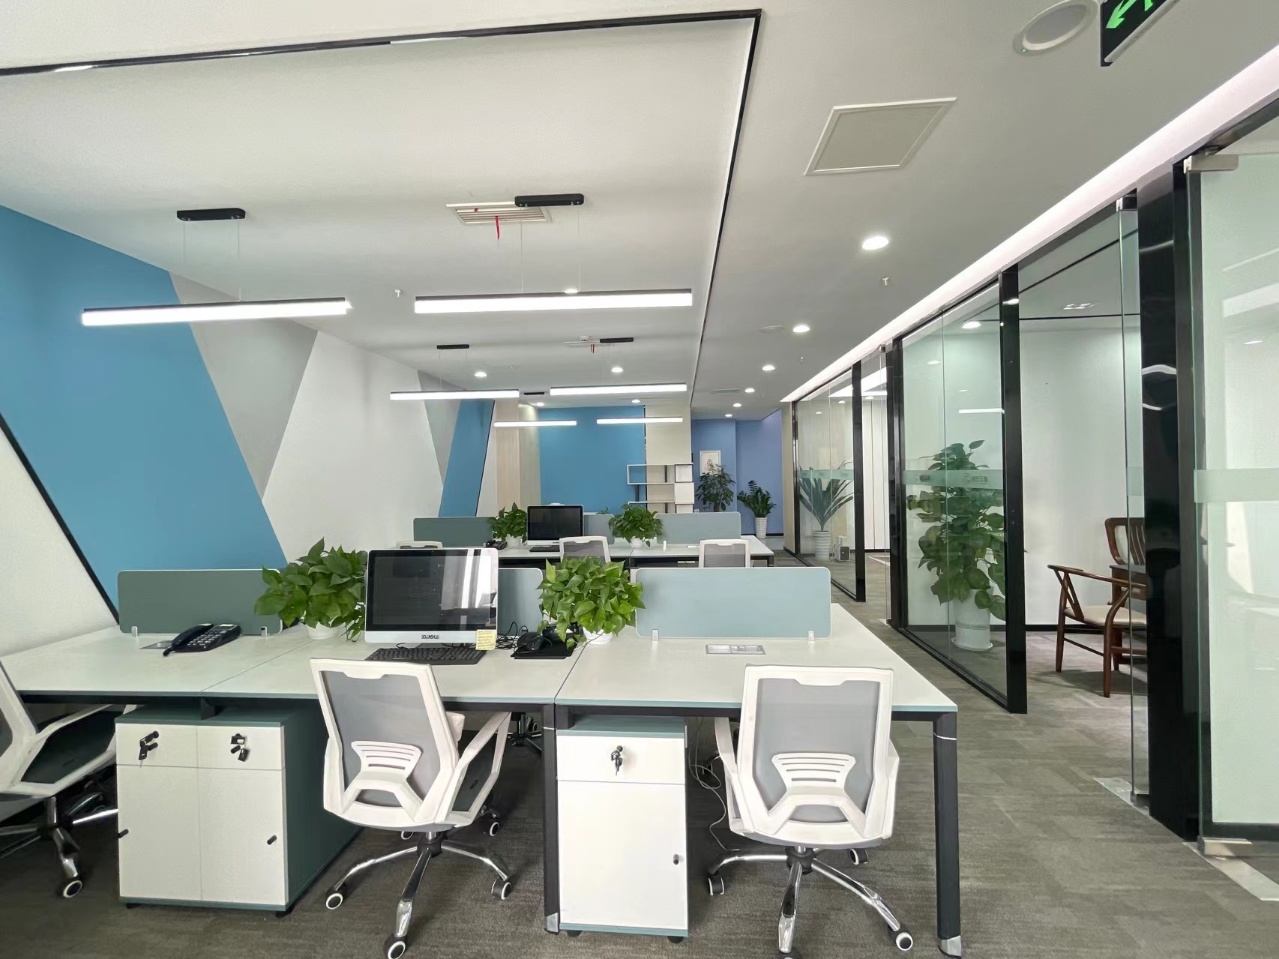 高新区新世纪环球中心精装小面积办公室 简约艺术风格 含物业和空调费